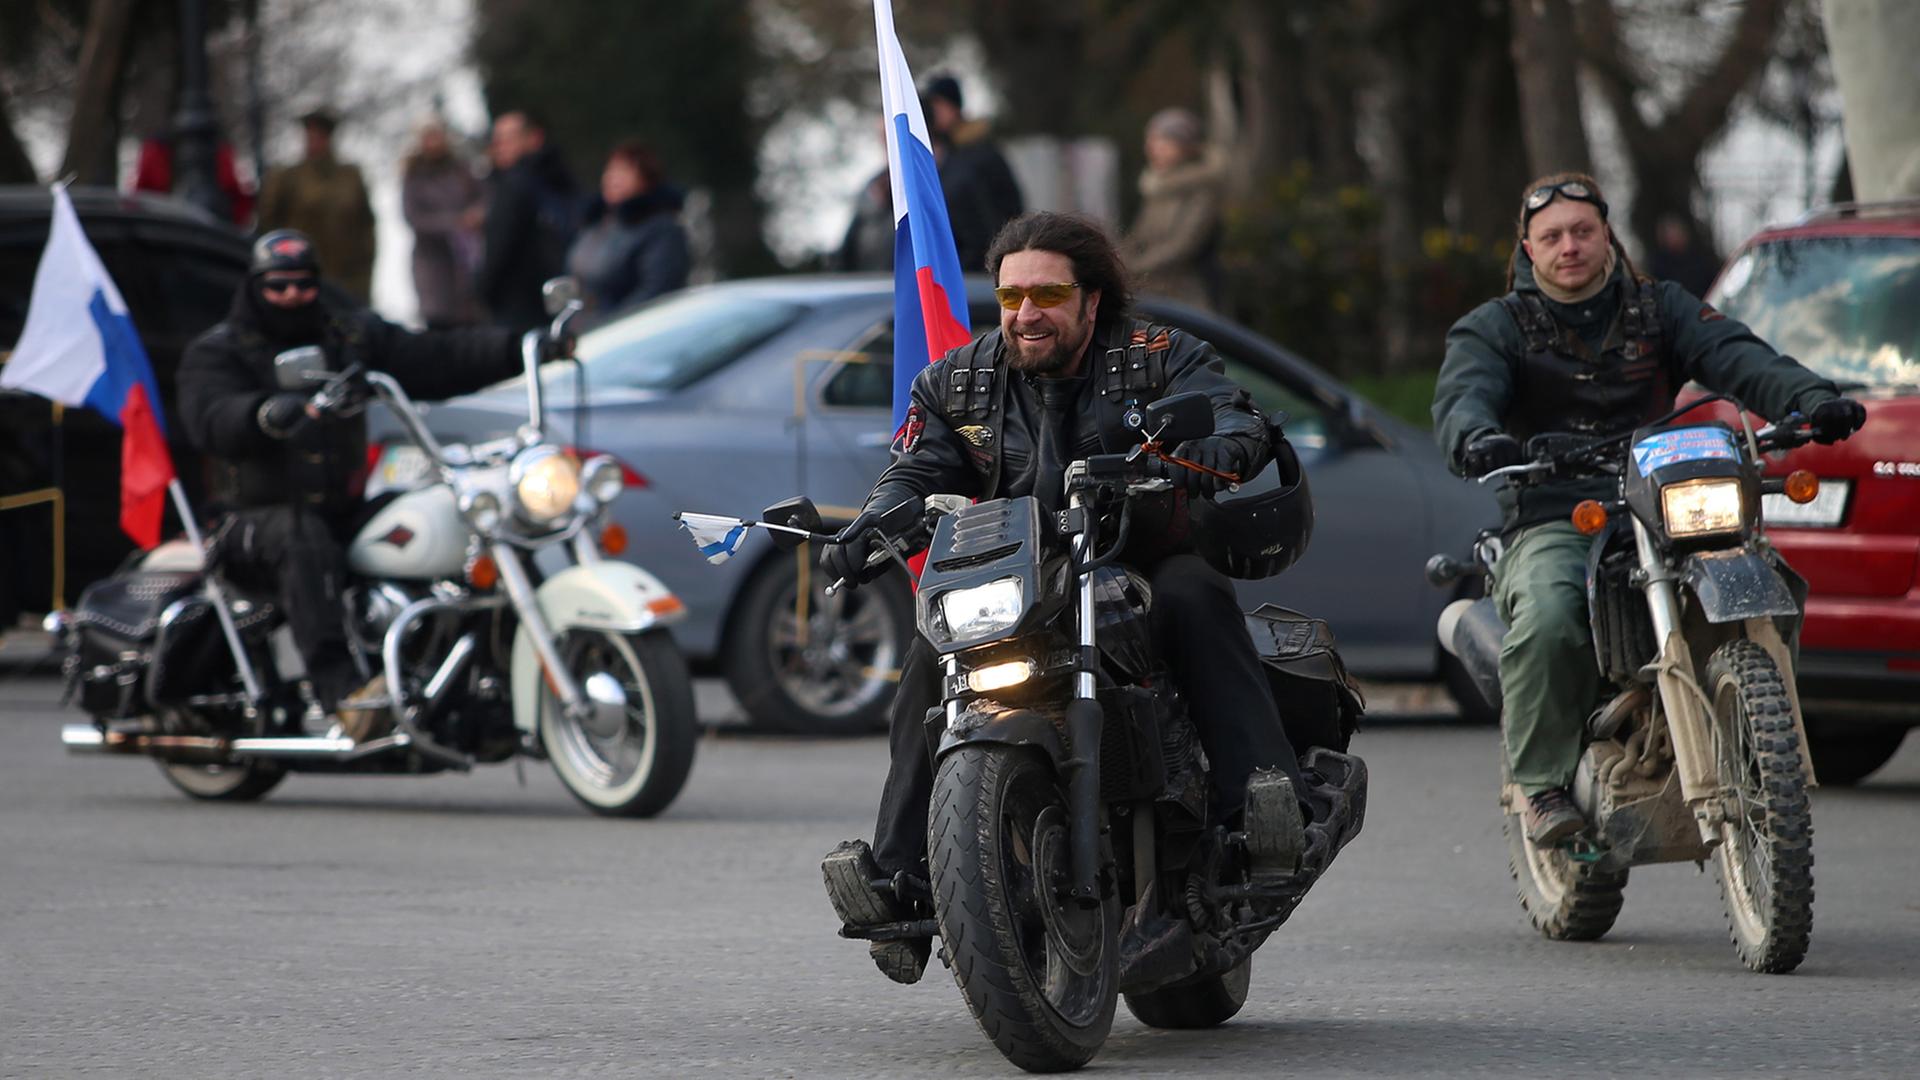 Der Anführer der Rocker-Gang "Nachtwölfe", Alexander Zaldostanow, fährt mit anderen Bikern durch Sewastopol.